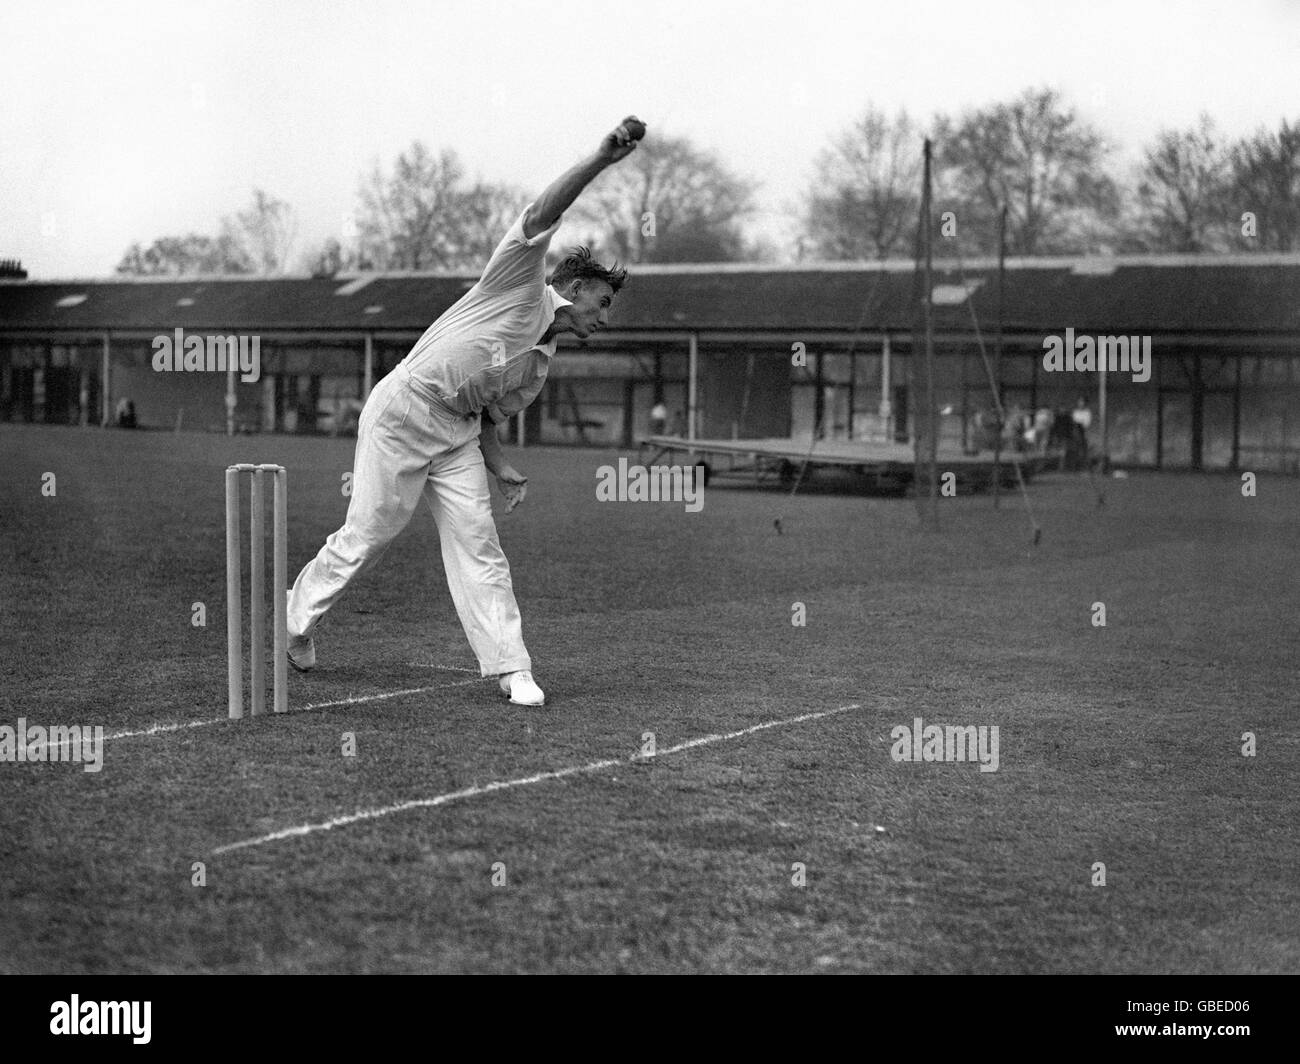 Cricket - Testspiel - England gegen Australien - Lord's. Ray Lindwall von der australischen Cricket-Nationalmannschaft Bowling. Stockfoto